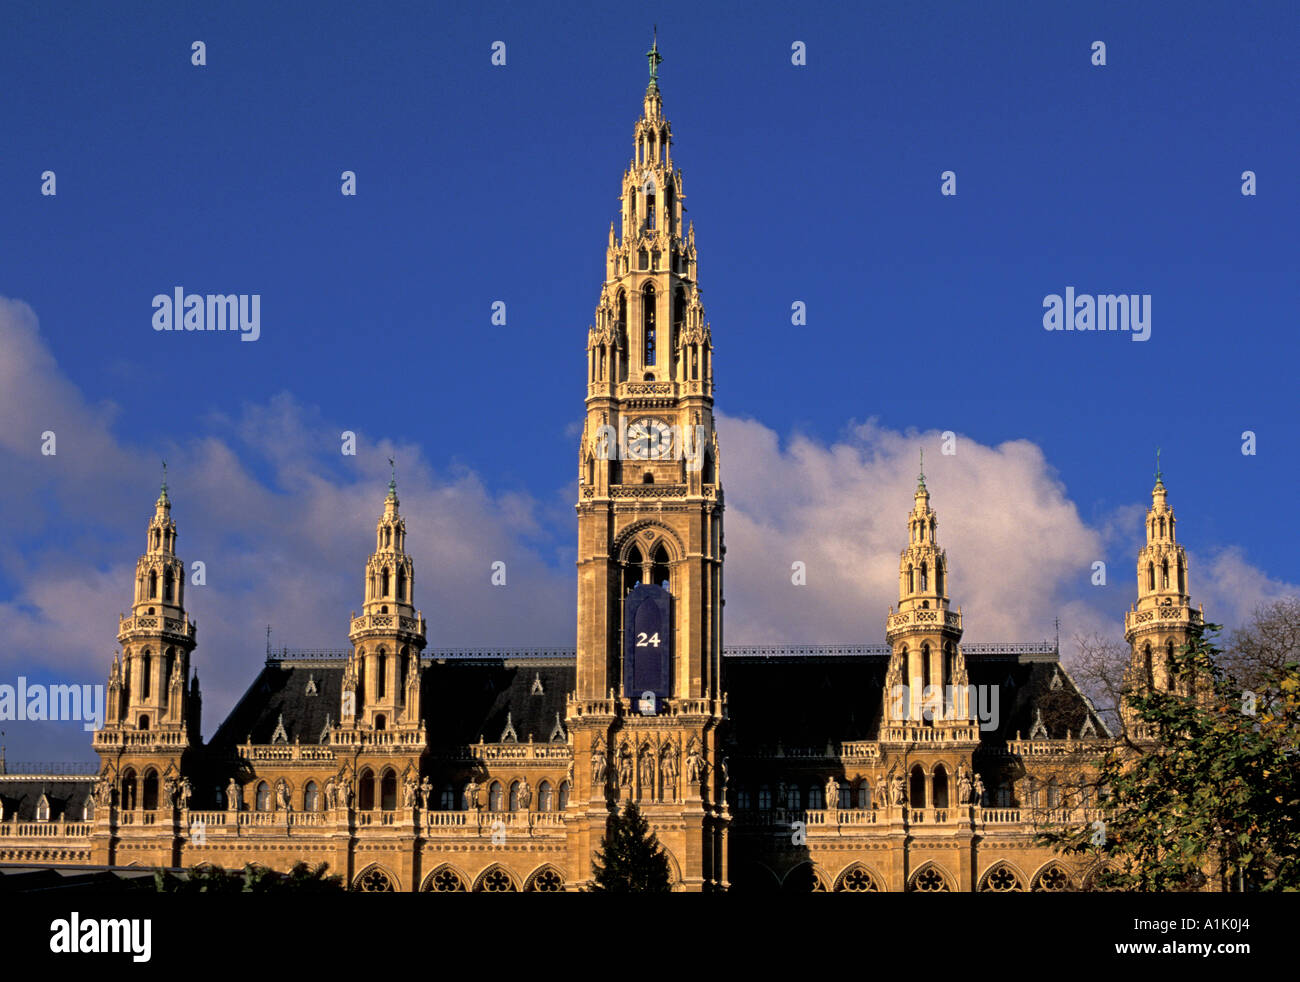 Neo gothic architecture of Vienna Town Hall designed by Friedrich von Schmidt Austria Stock Photo